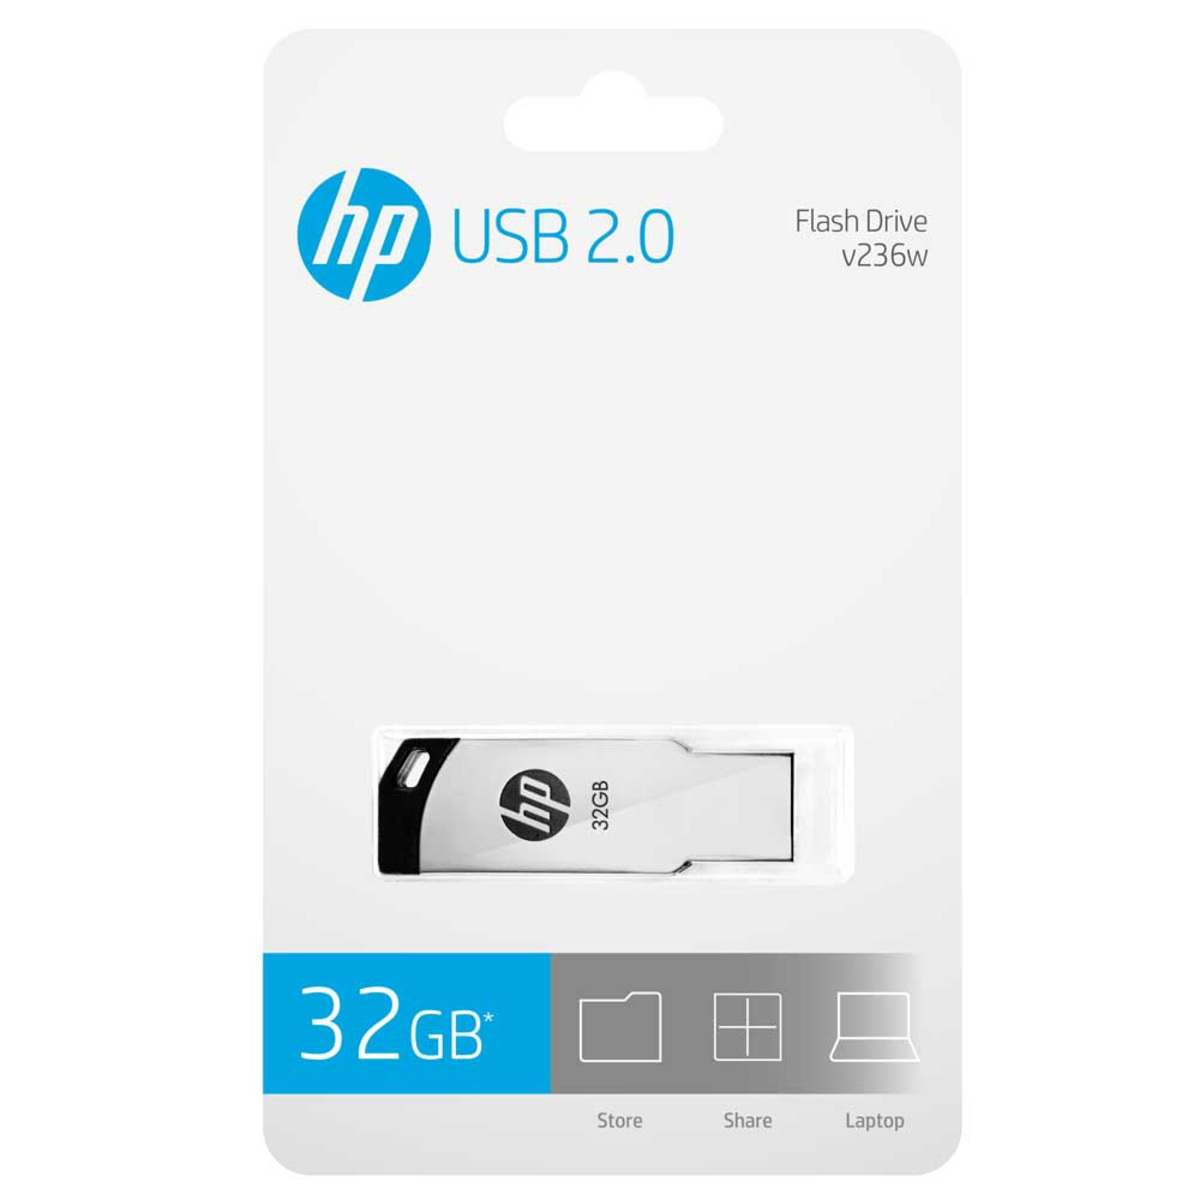 HP USB 2.0 Flash Drive HPFD236W 32GB